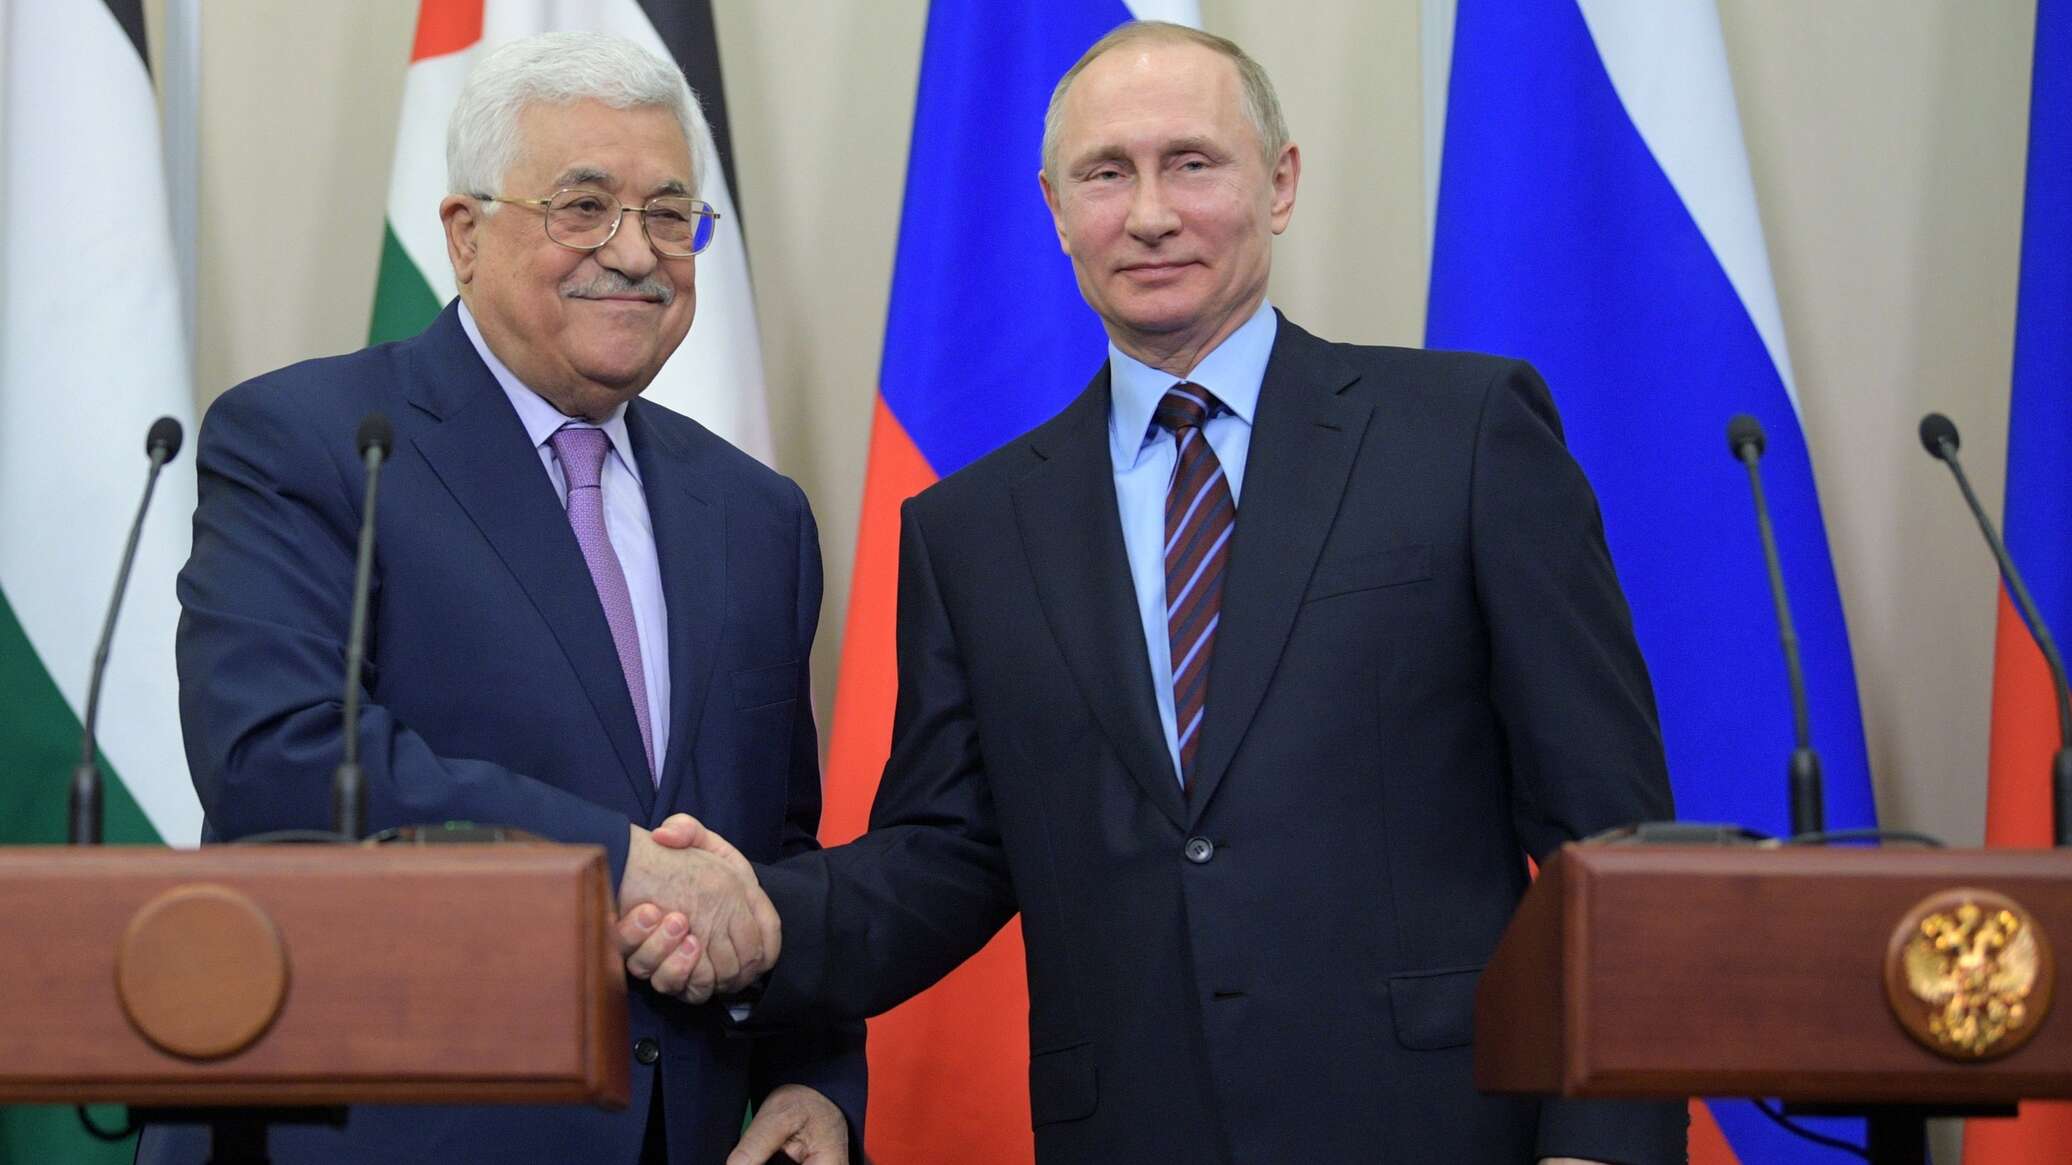 بوتين يوجه رسالة إلى عباس يؤكد فيها أهمية إقامة دولة فلسطين بحدود عام 1967